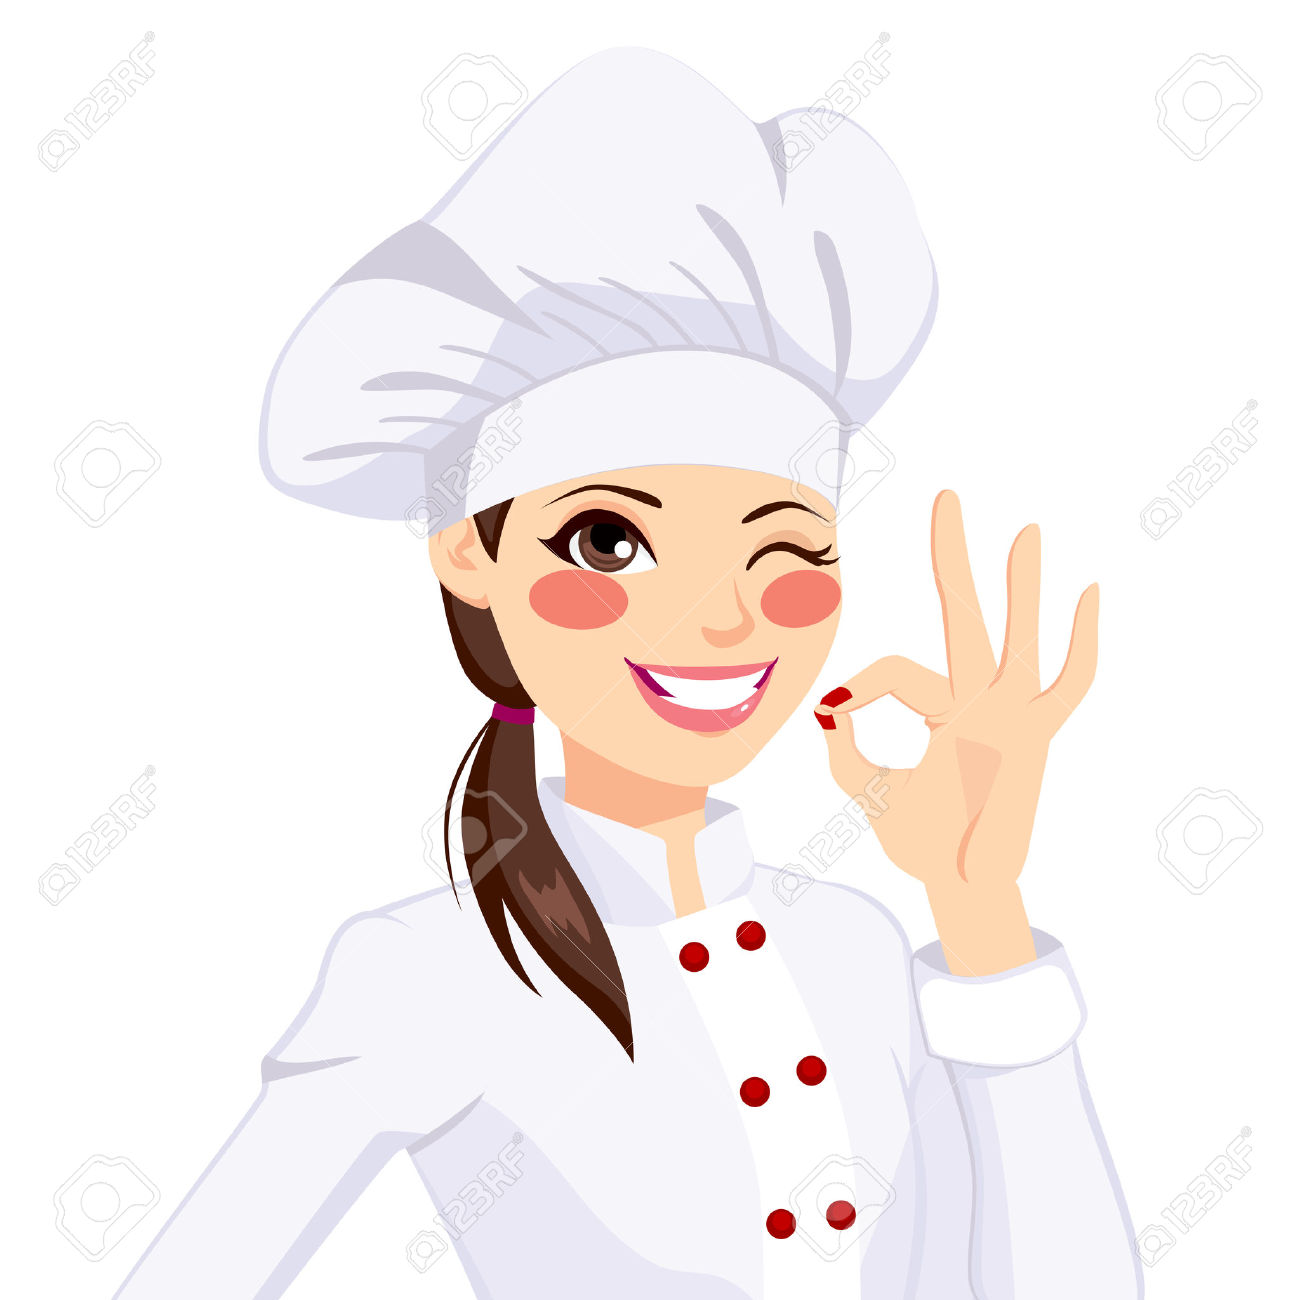 Chef Mujer: Cocinero De La Mujer Confidente Joven En Uniforme Que Guiña Un Ojo Y - Chef Mujer, Transparent background PNG HD thumbnail